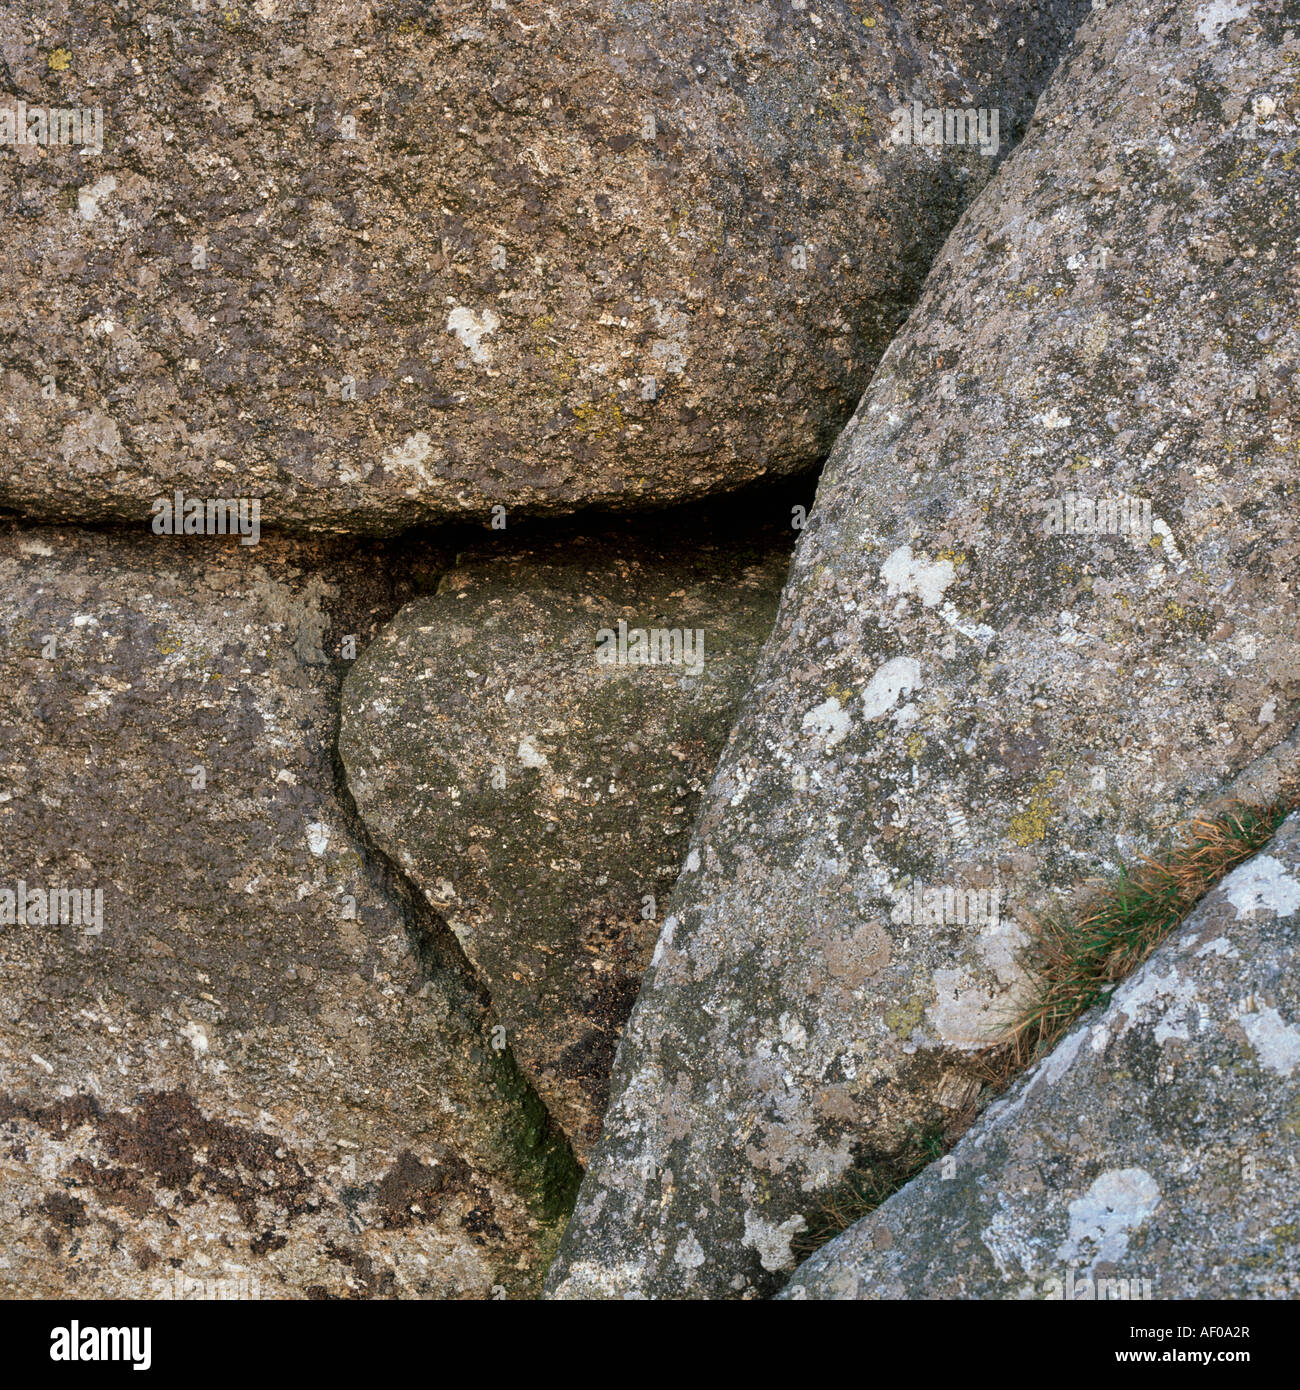 Dettaglio delle rocce di granito a Combestone Tor, Dartmoor Devon, Regno Unito Foto Stock